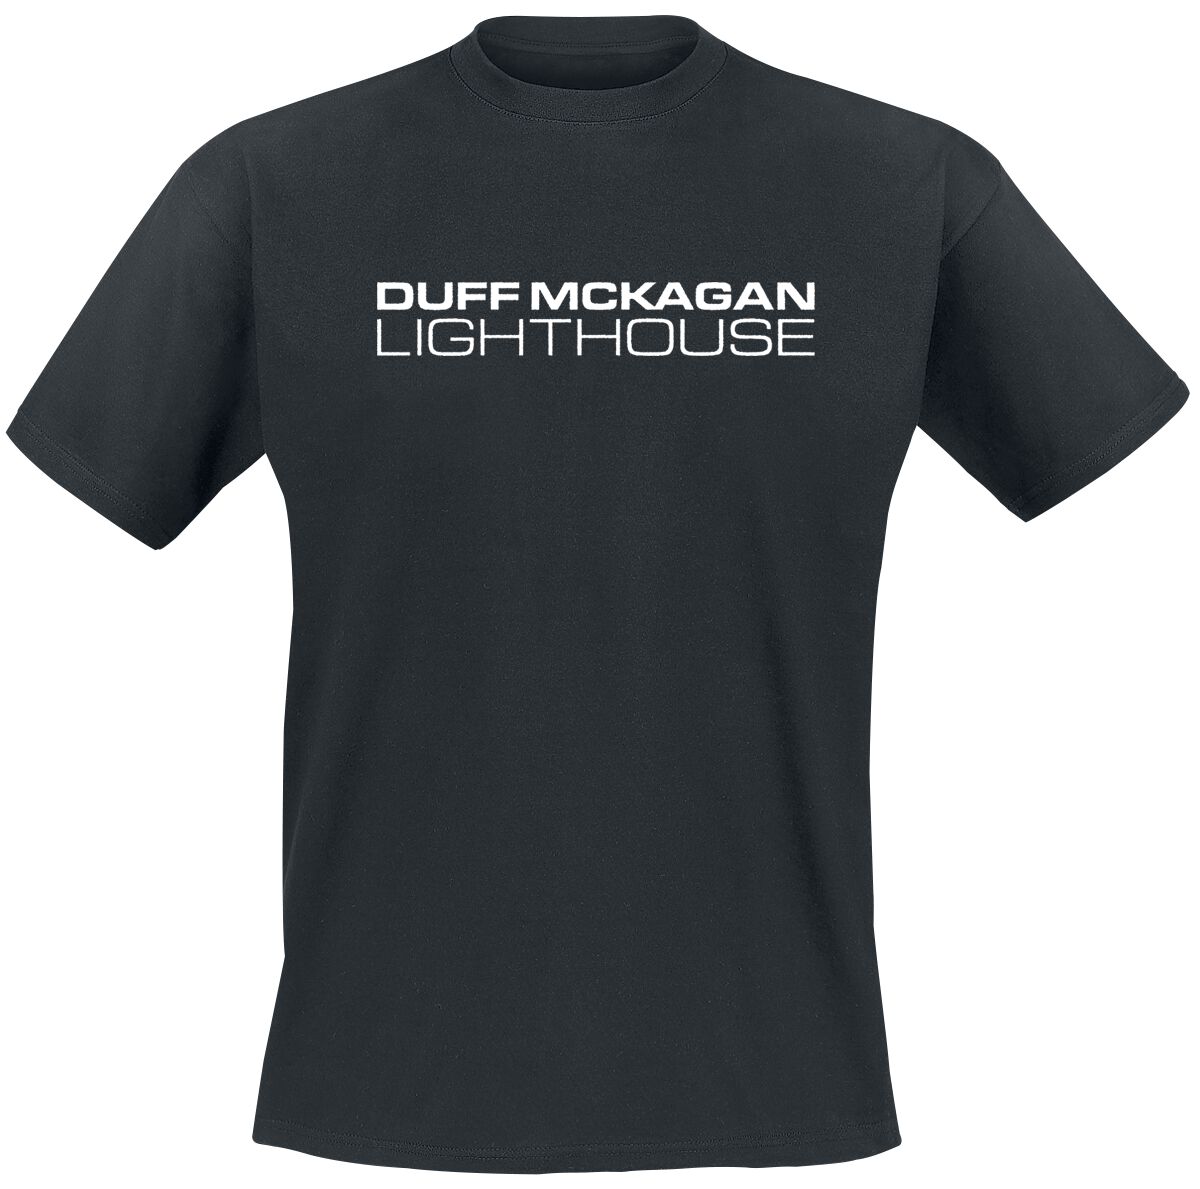 Levně McKagan, Duff Lighthouse Tričko černá